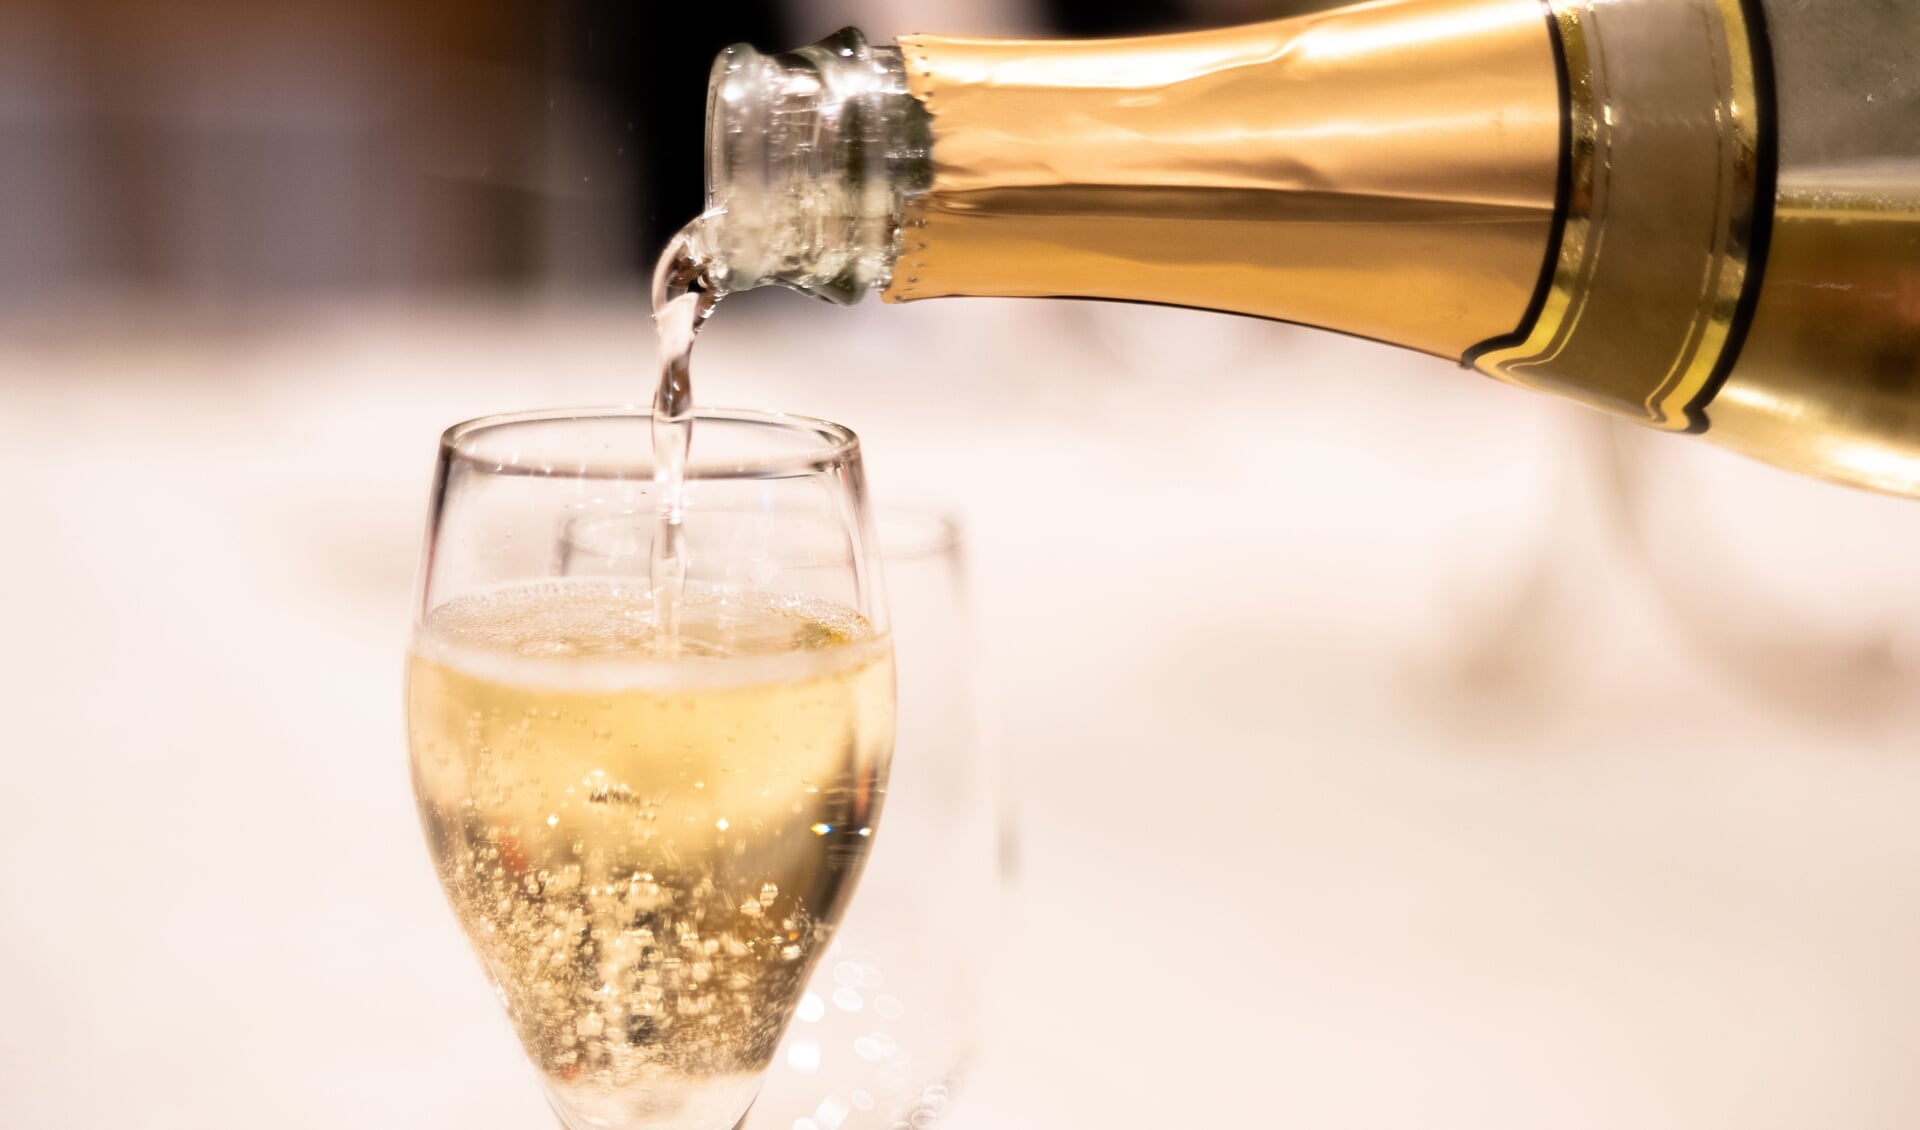 Goede champagne drink je niet uit een flûte! Het is het slechtste glas om champagne drinken - Nederlands Dagblad. De kwaliteitskrant van christelijk Nederland